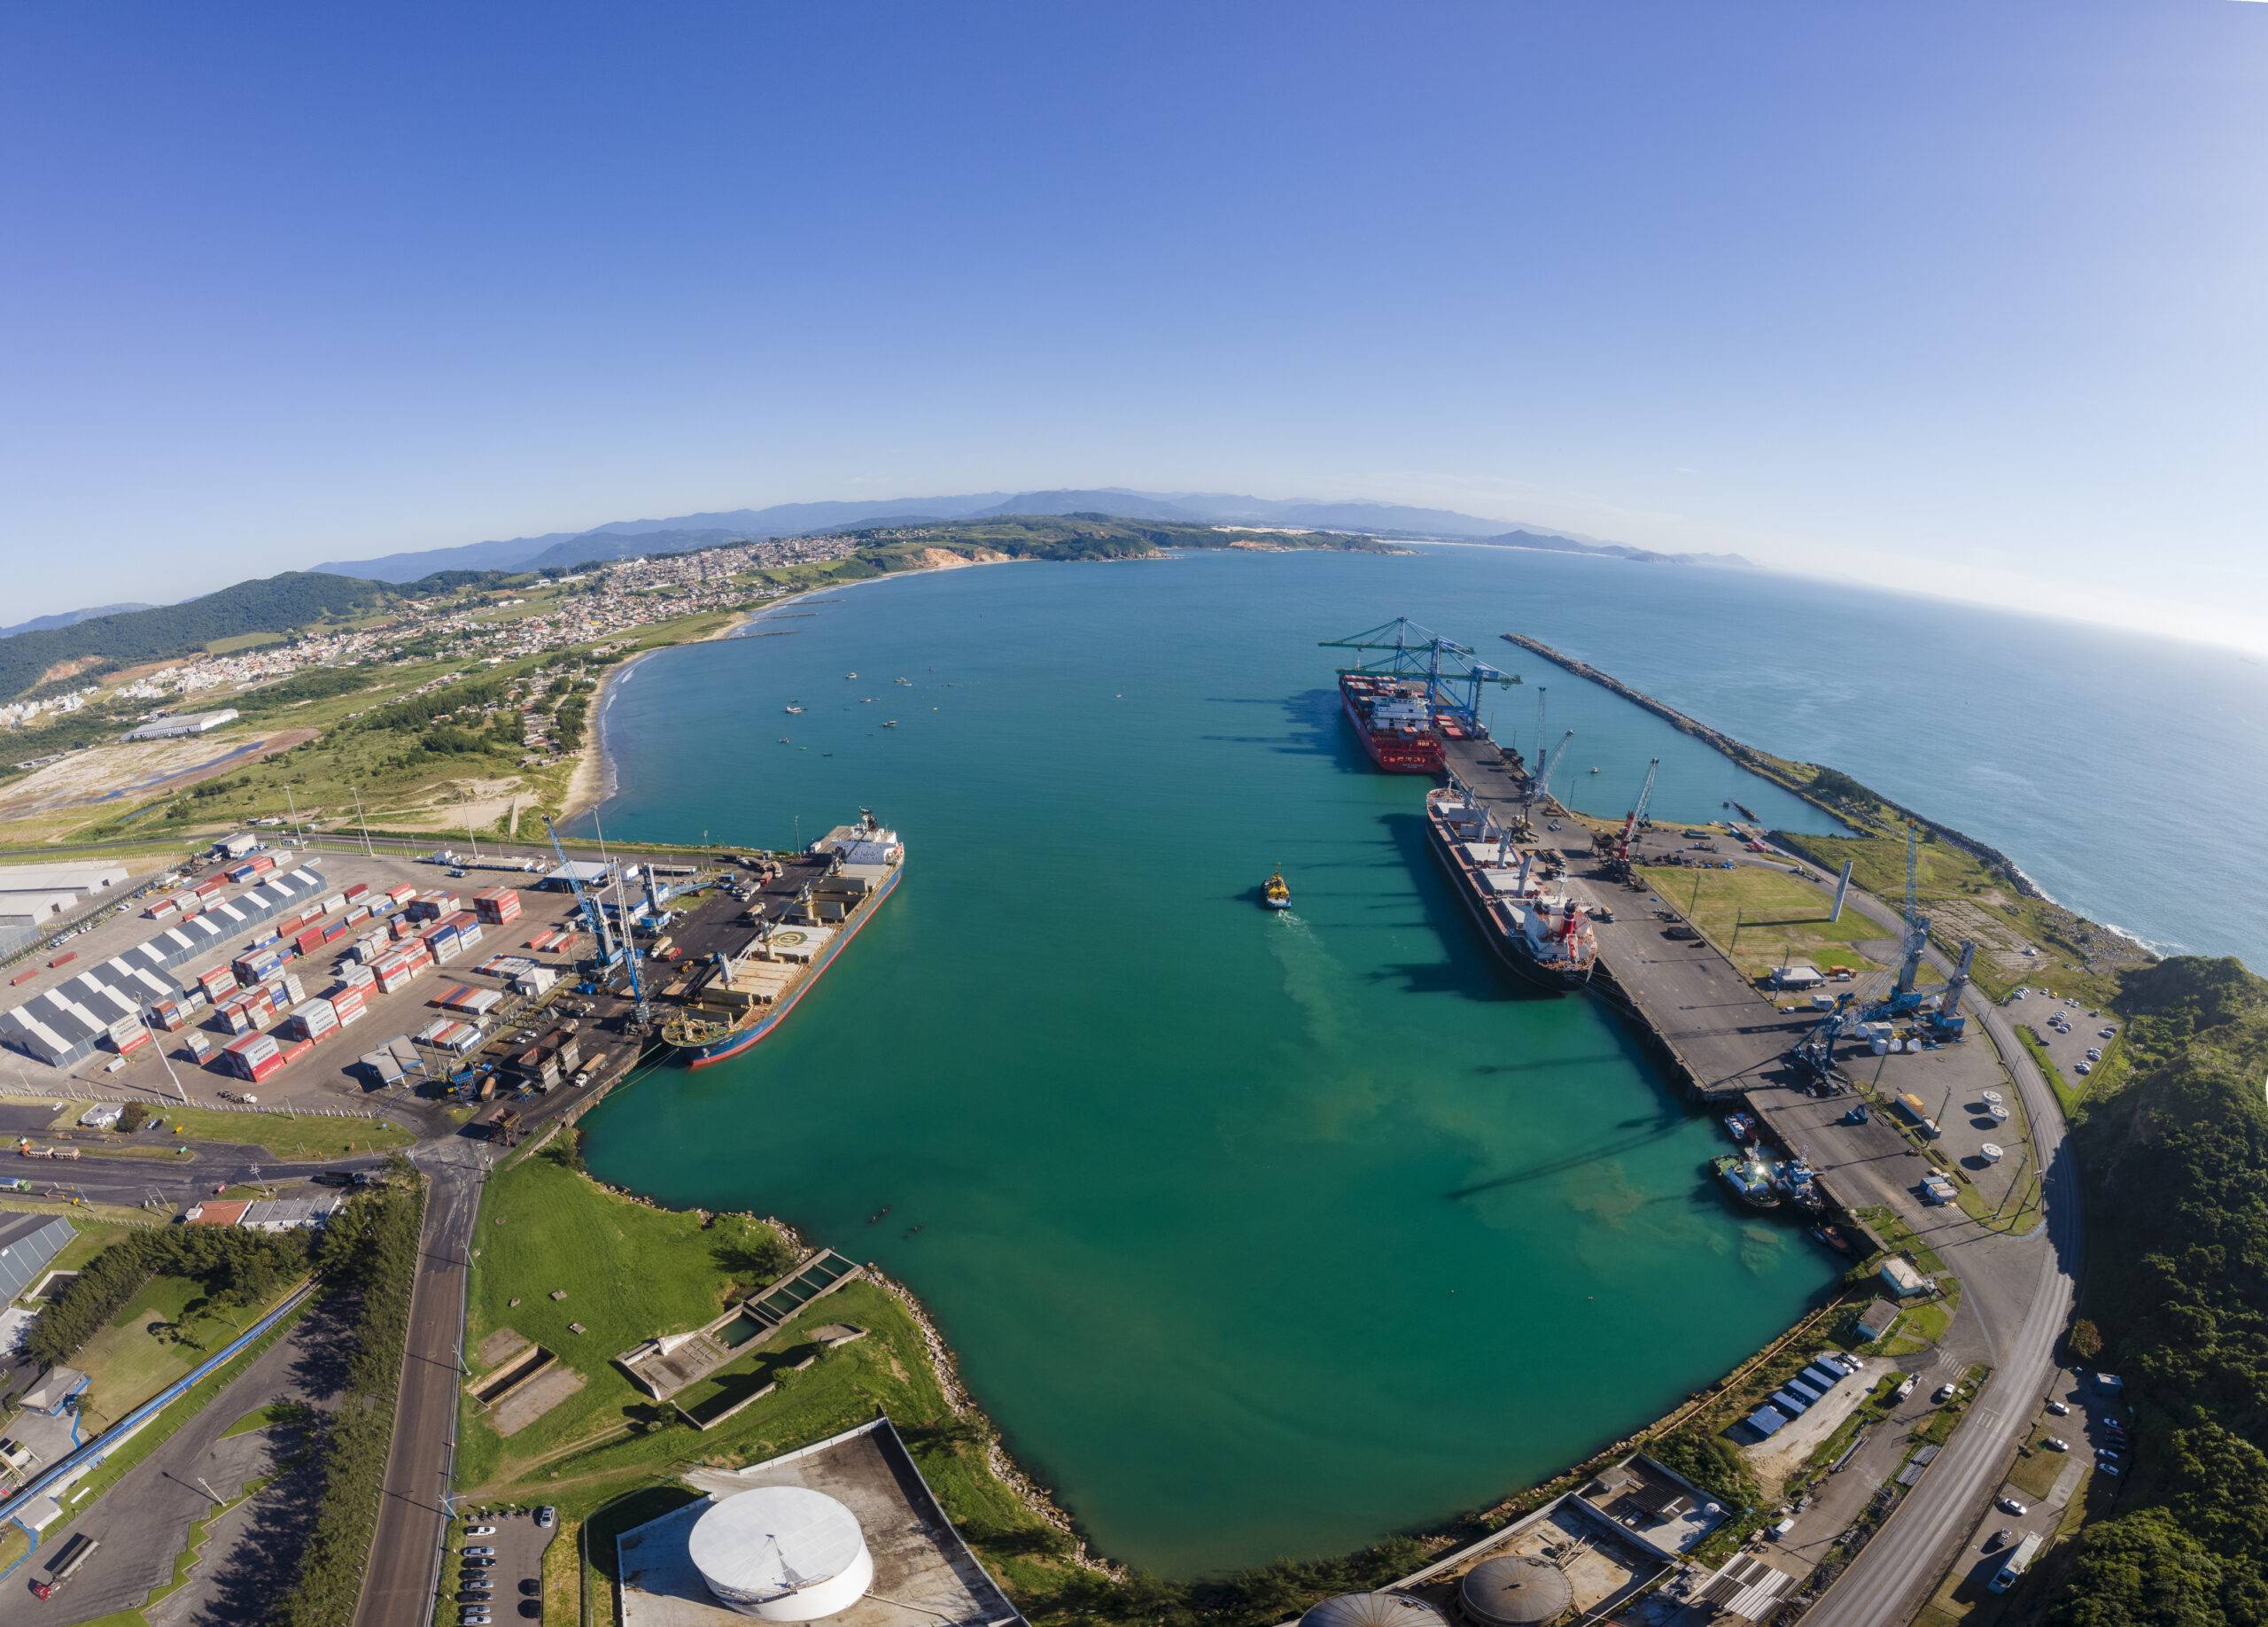 O Porto de Imbituba vai dividir um estande com o Porto de São Francisco do Sul, uma vez que os dois portos têm sua gestão delegada ao Estado de Santa Catarina